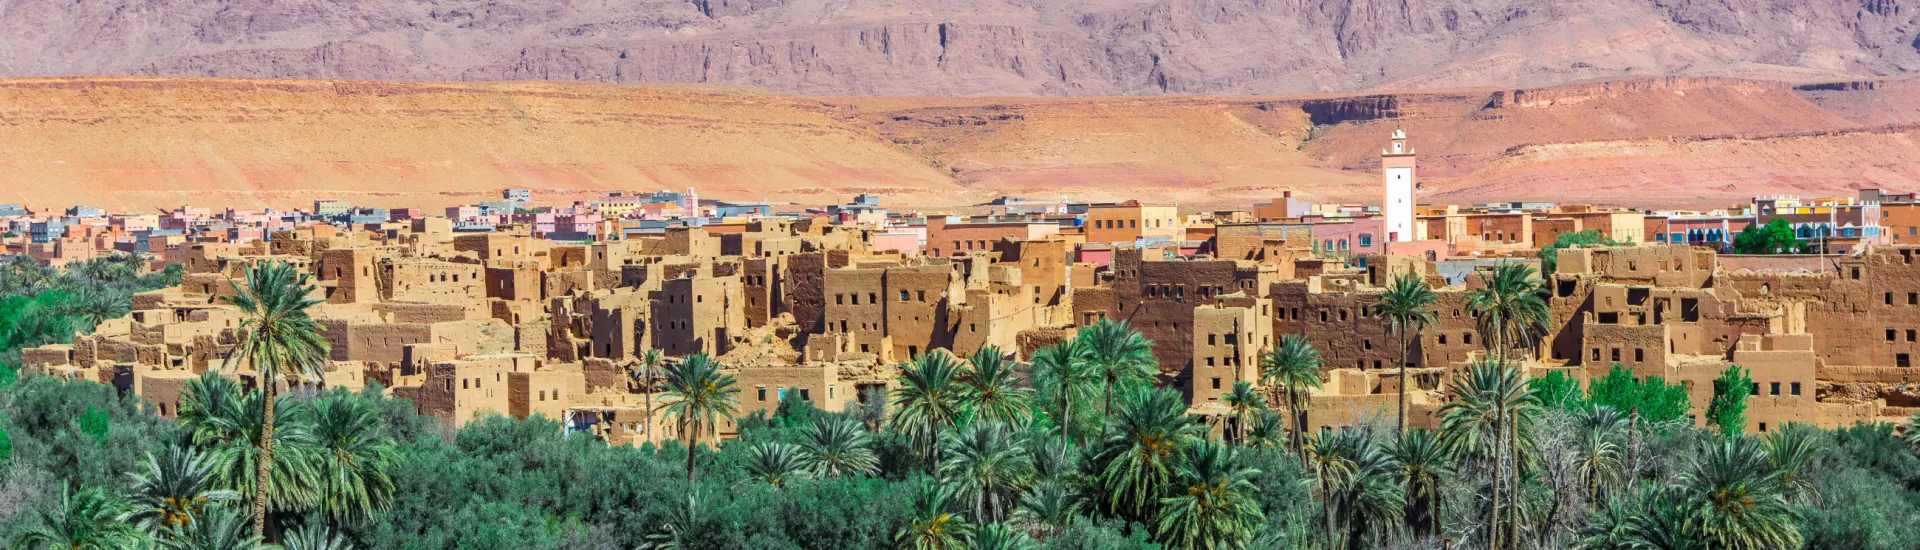 Kasbah Ait Benhaddou, Marokko